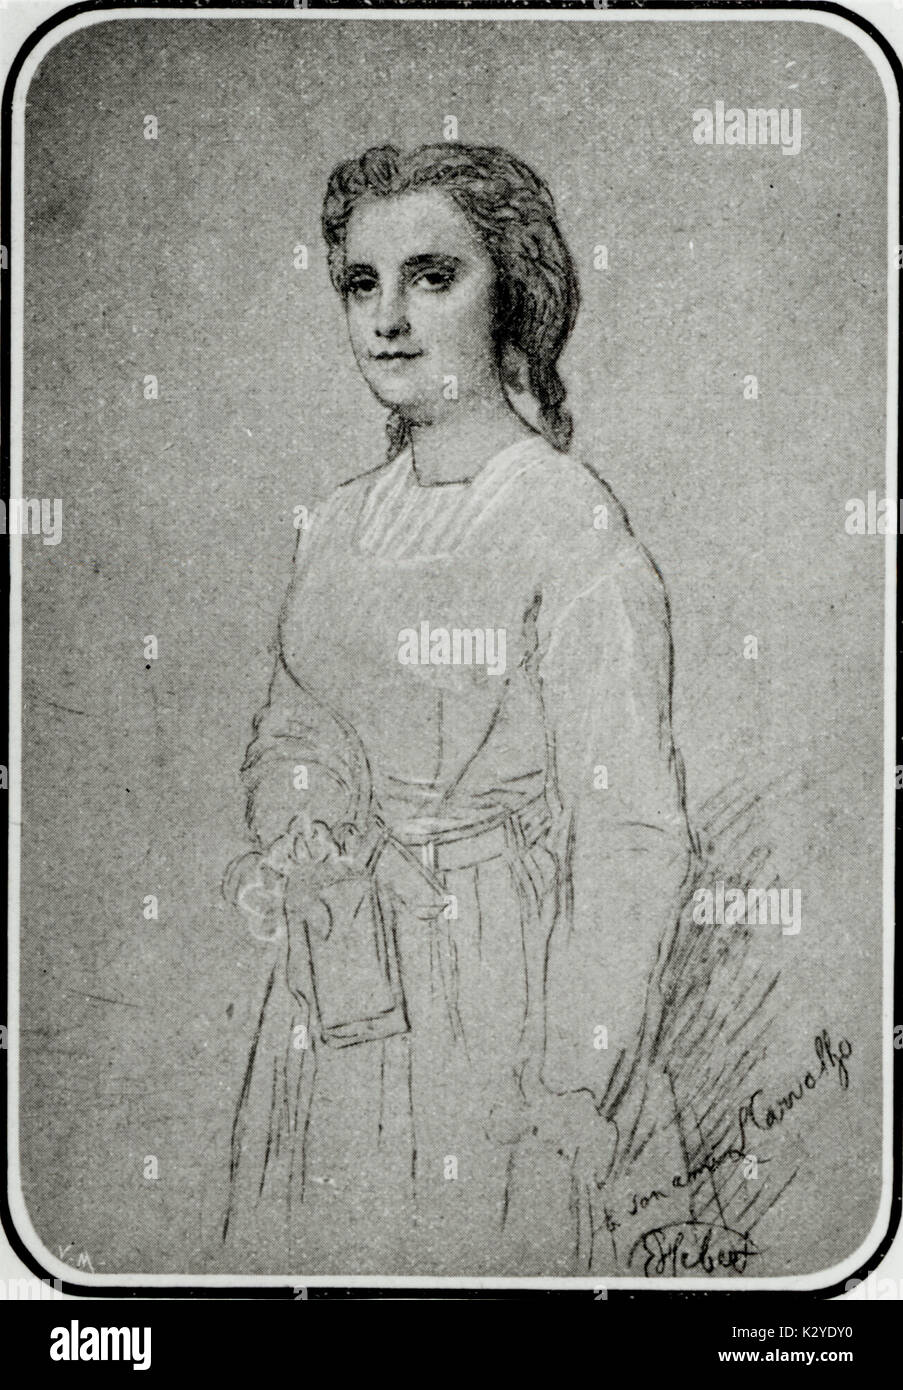 Marie Miolan-Carvalho creato il ruolo di Marguerite in Charles Gounod 's opera Faust. Premiered Theatre Lyrique, Paris 19 Marzo 1859. Soprano francese (1827-1895)- Disegno di Hebert Foto Stock